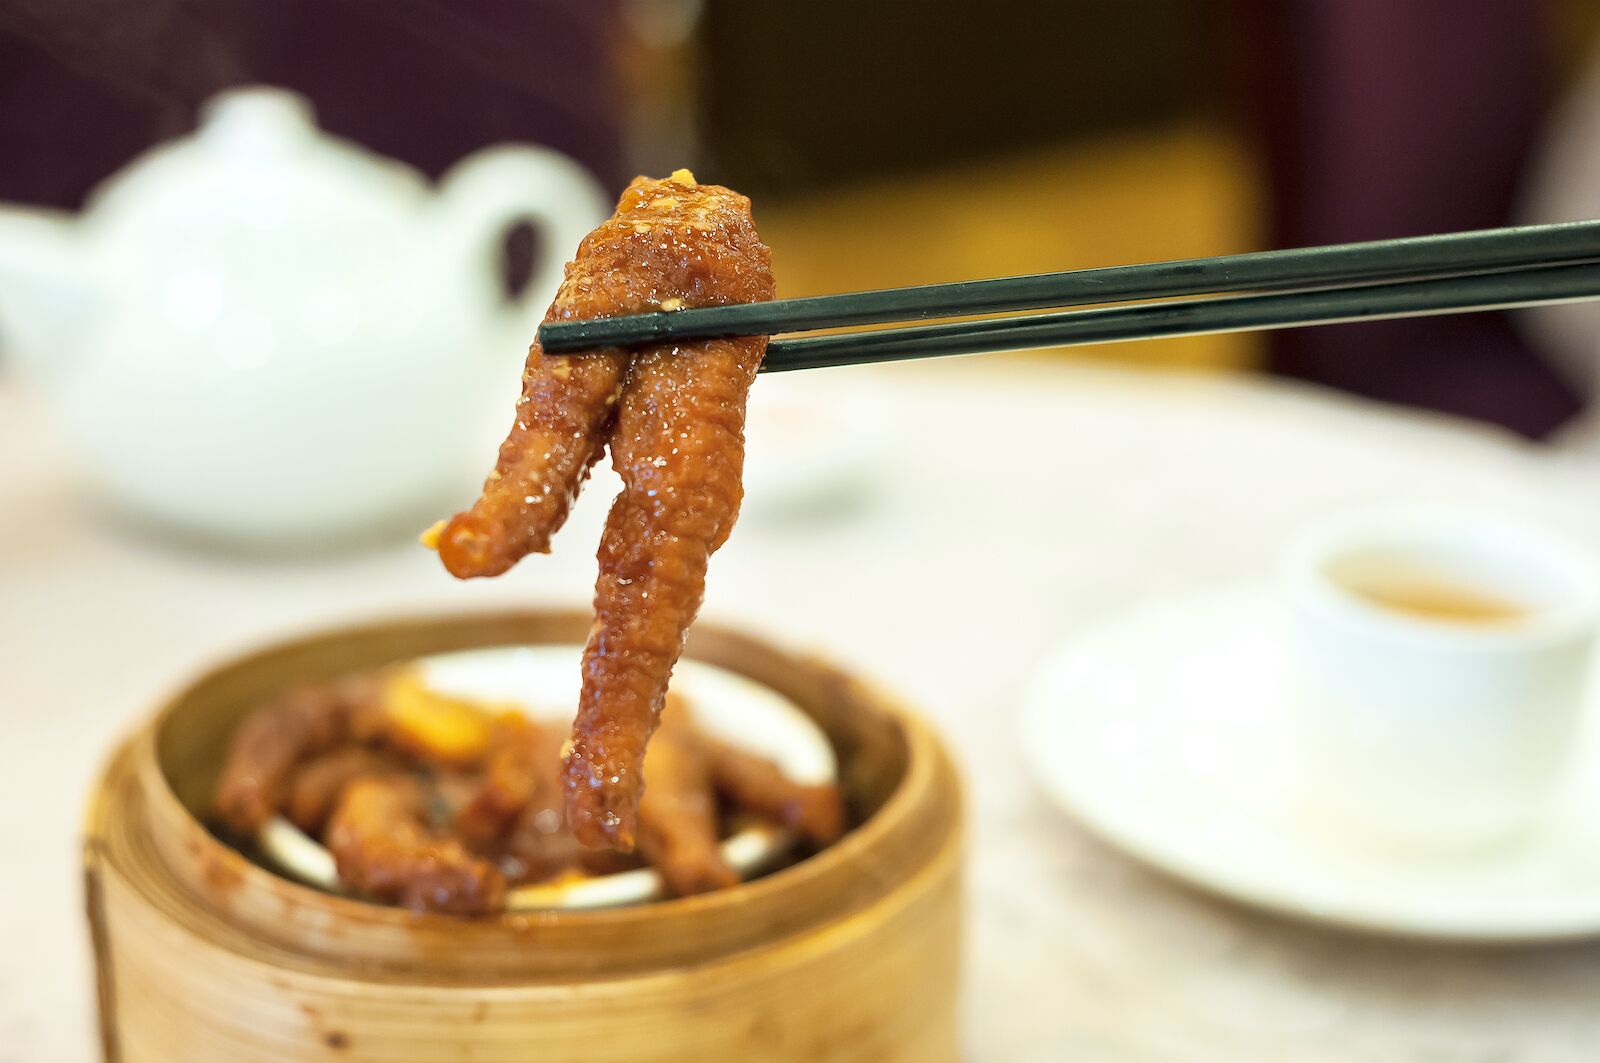 Steamed chicken feet at Hong Kong dim sum restaurant